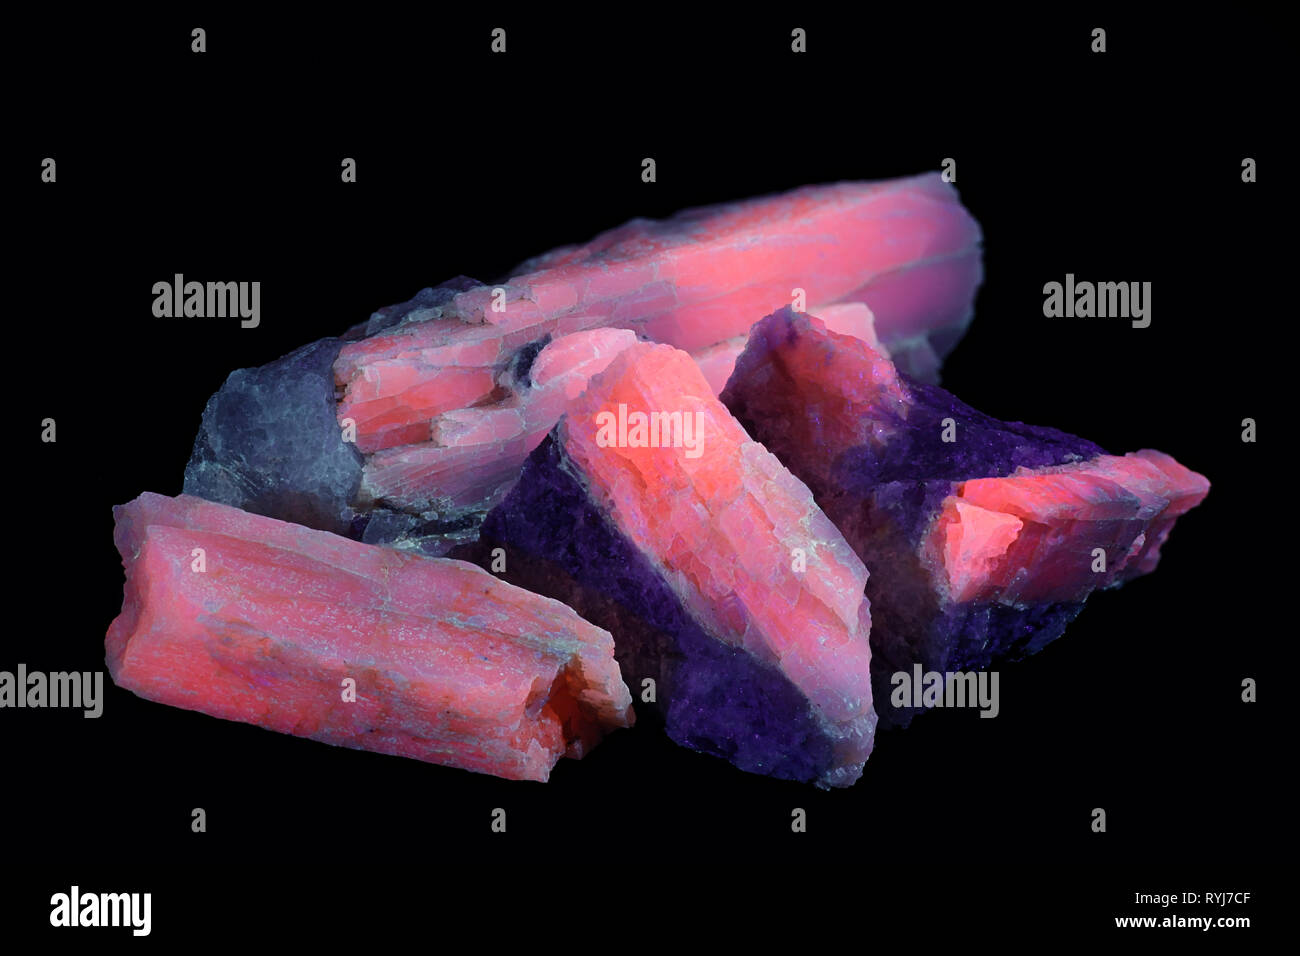 Kristalle von industriellen Lithium Erz spodumene zeigen rote Fluoreszenz im UV-Licht (365 nm). Probe von Haapaluoma Finnland. Stockfoto